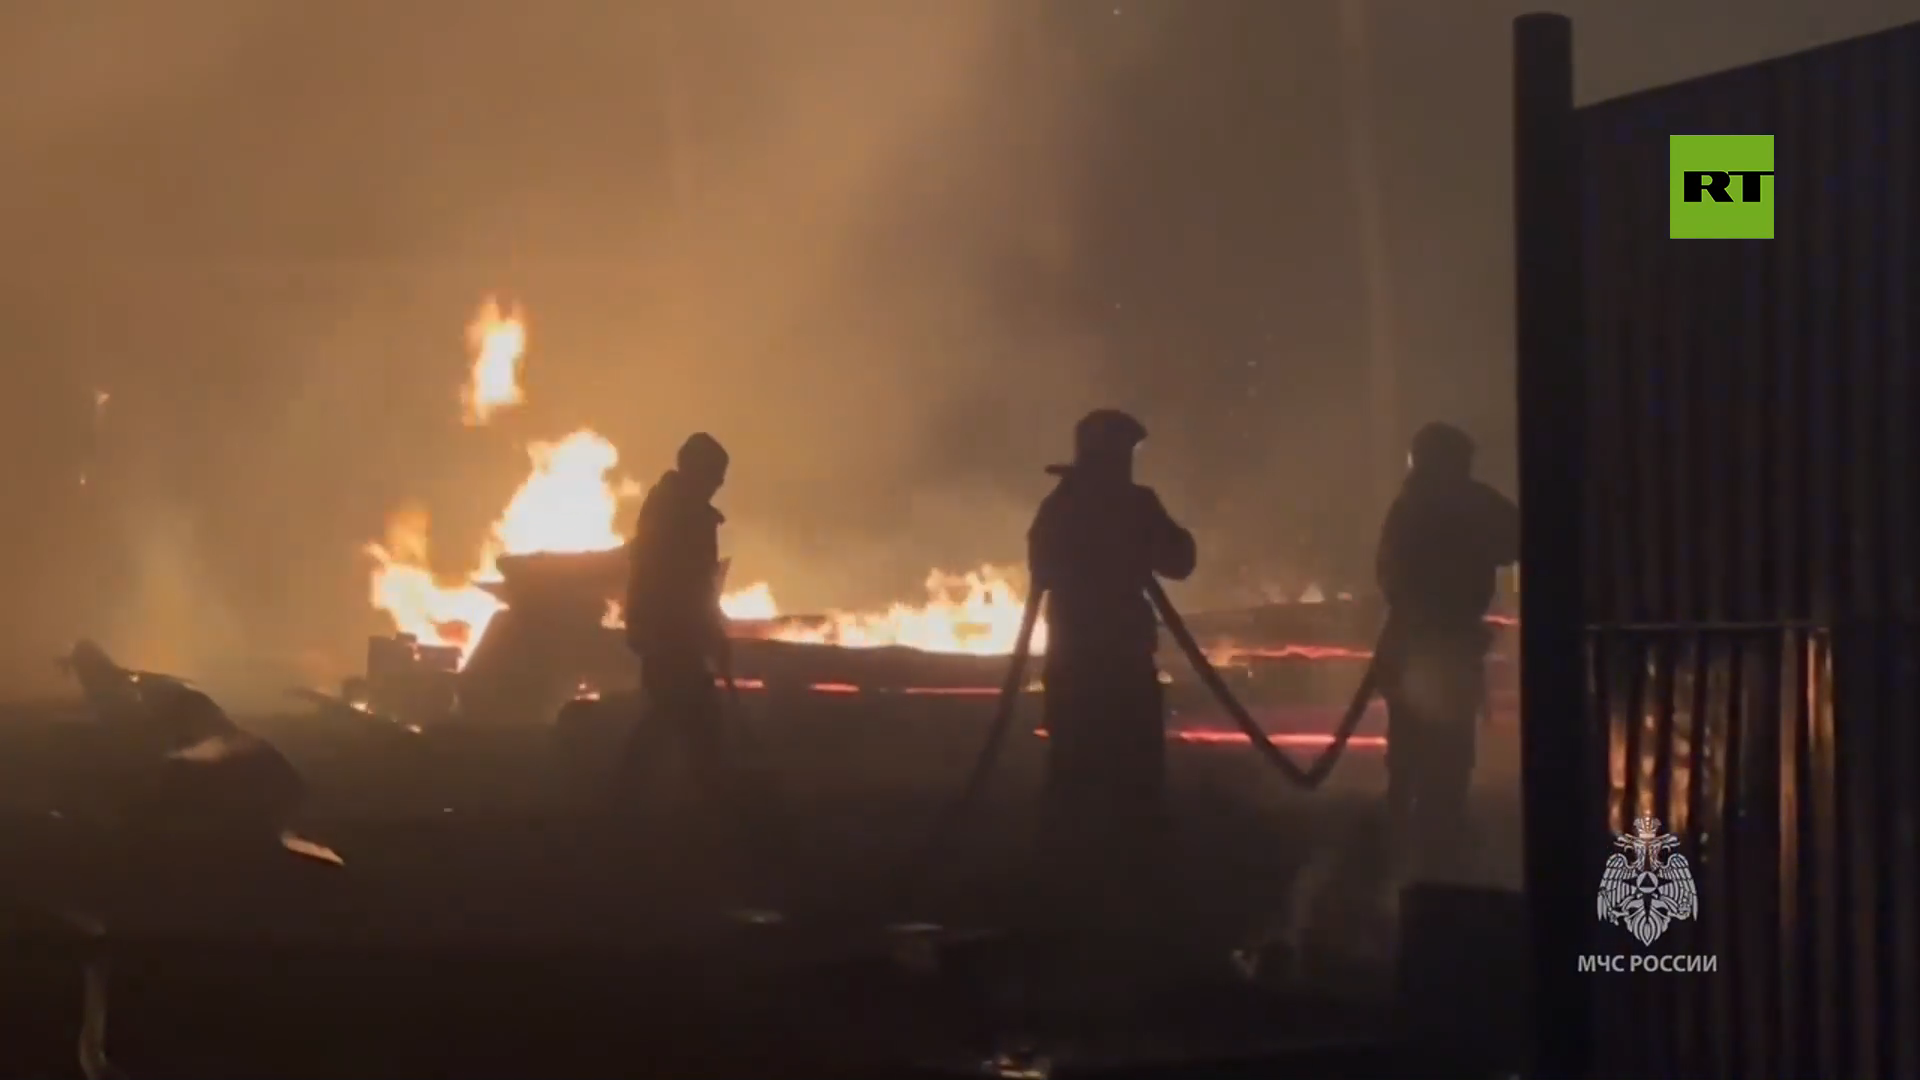 بالفيديو.. انتشار رقعة الحرائق في أولان-أوديه الروسية